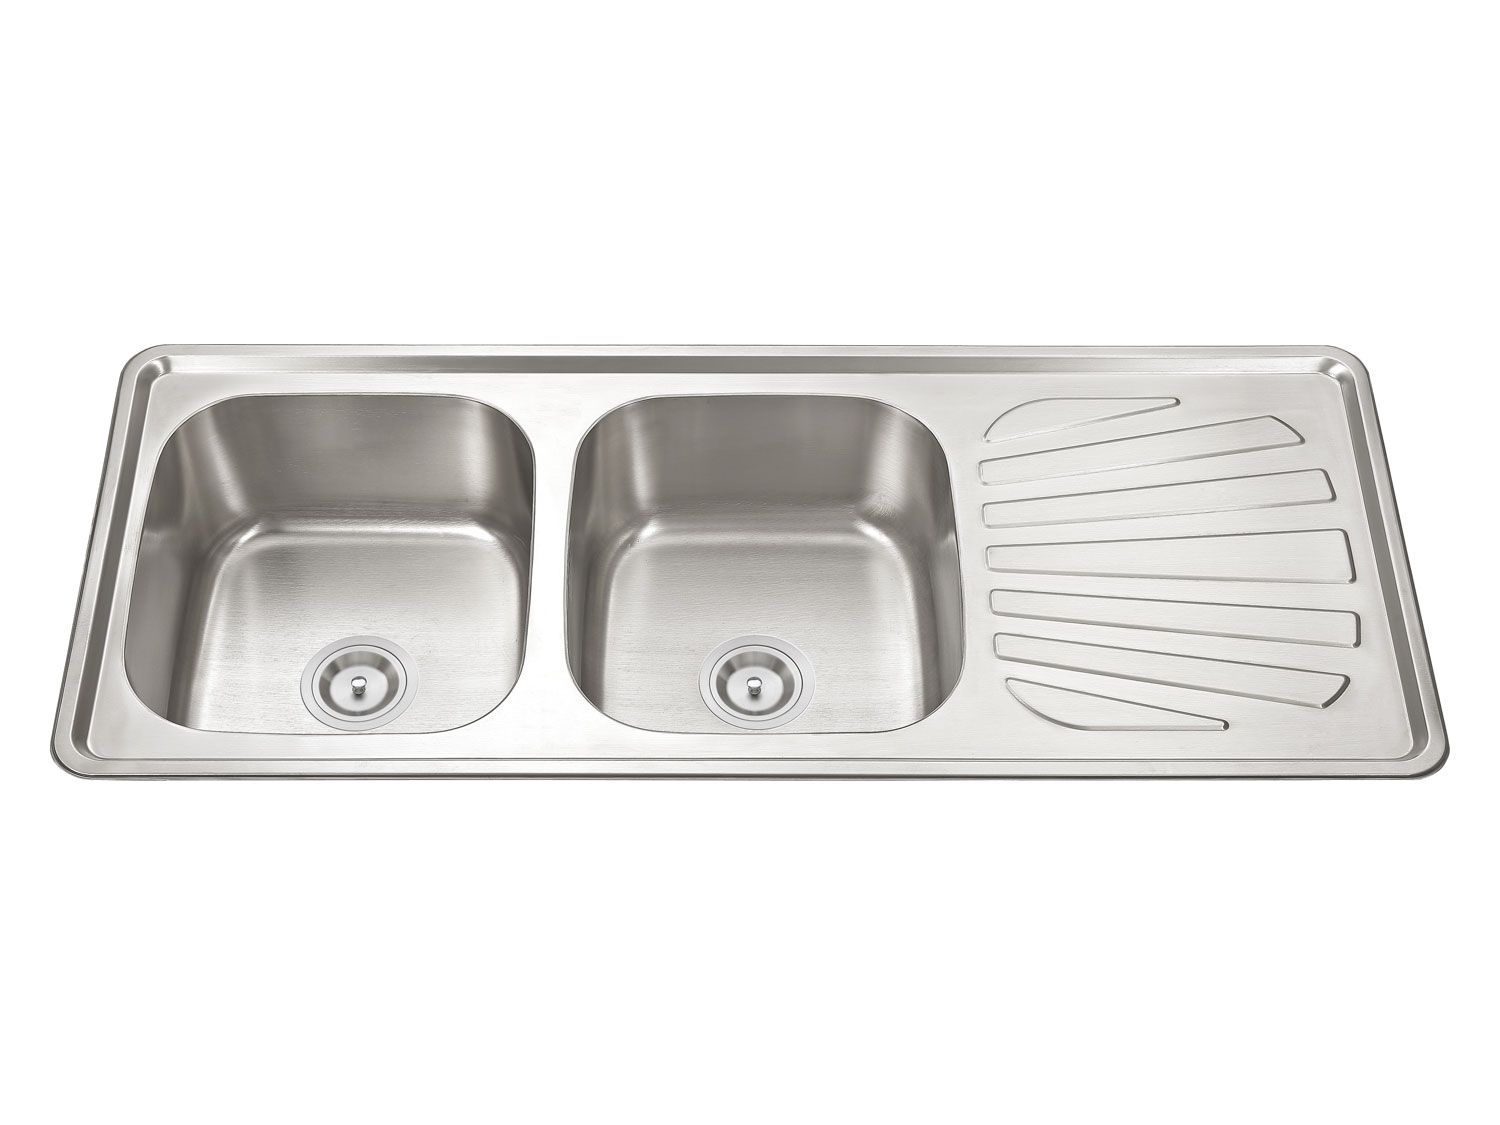 1200 x 500 kitchen sink